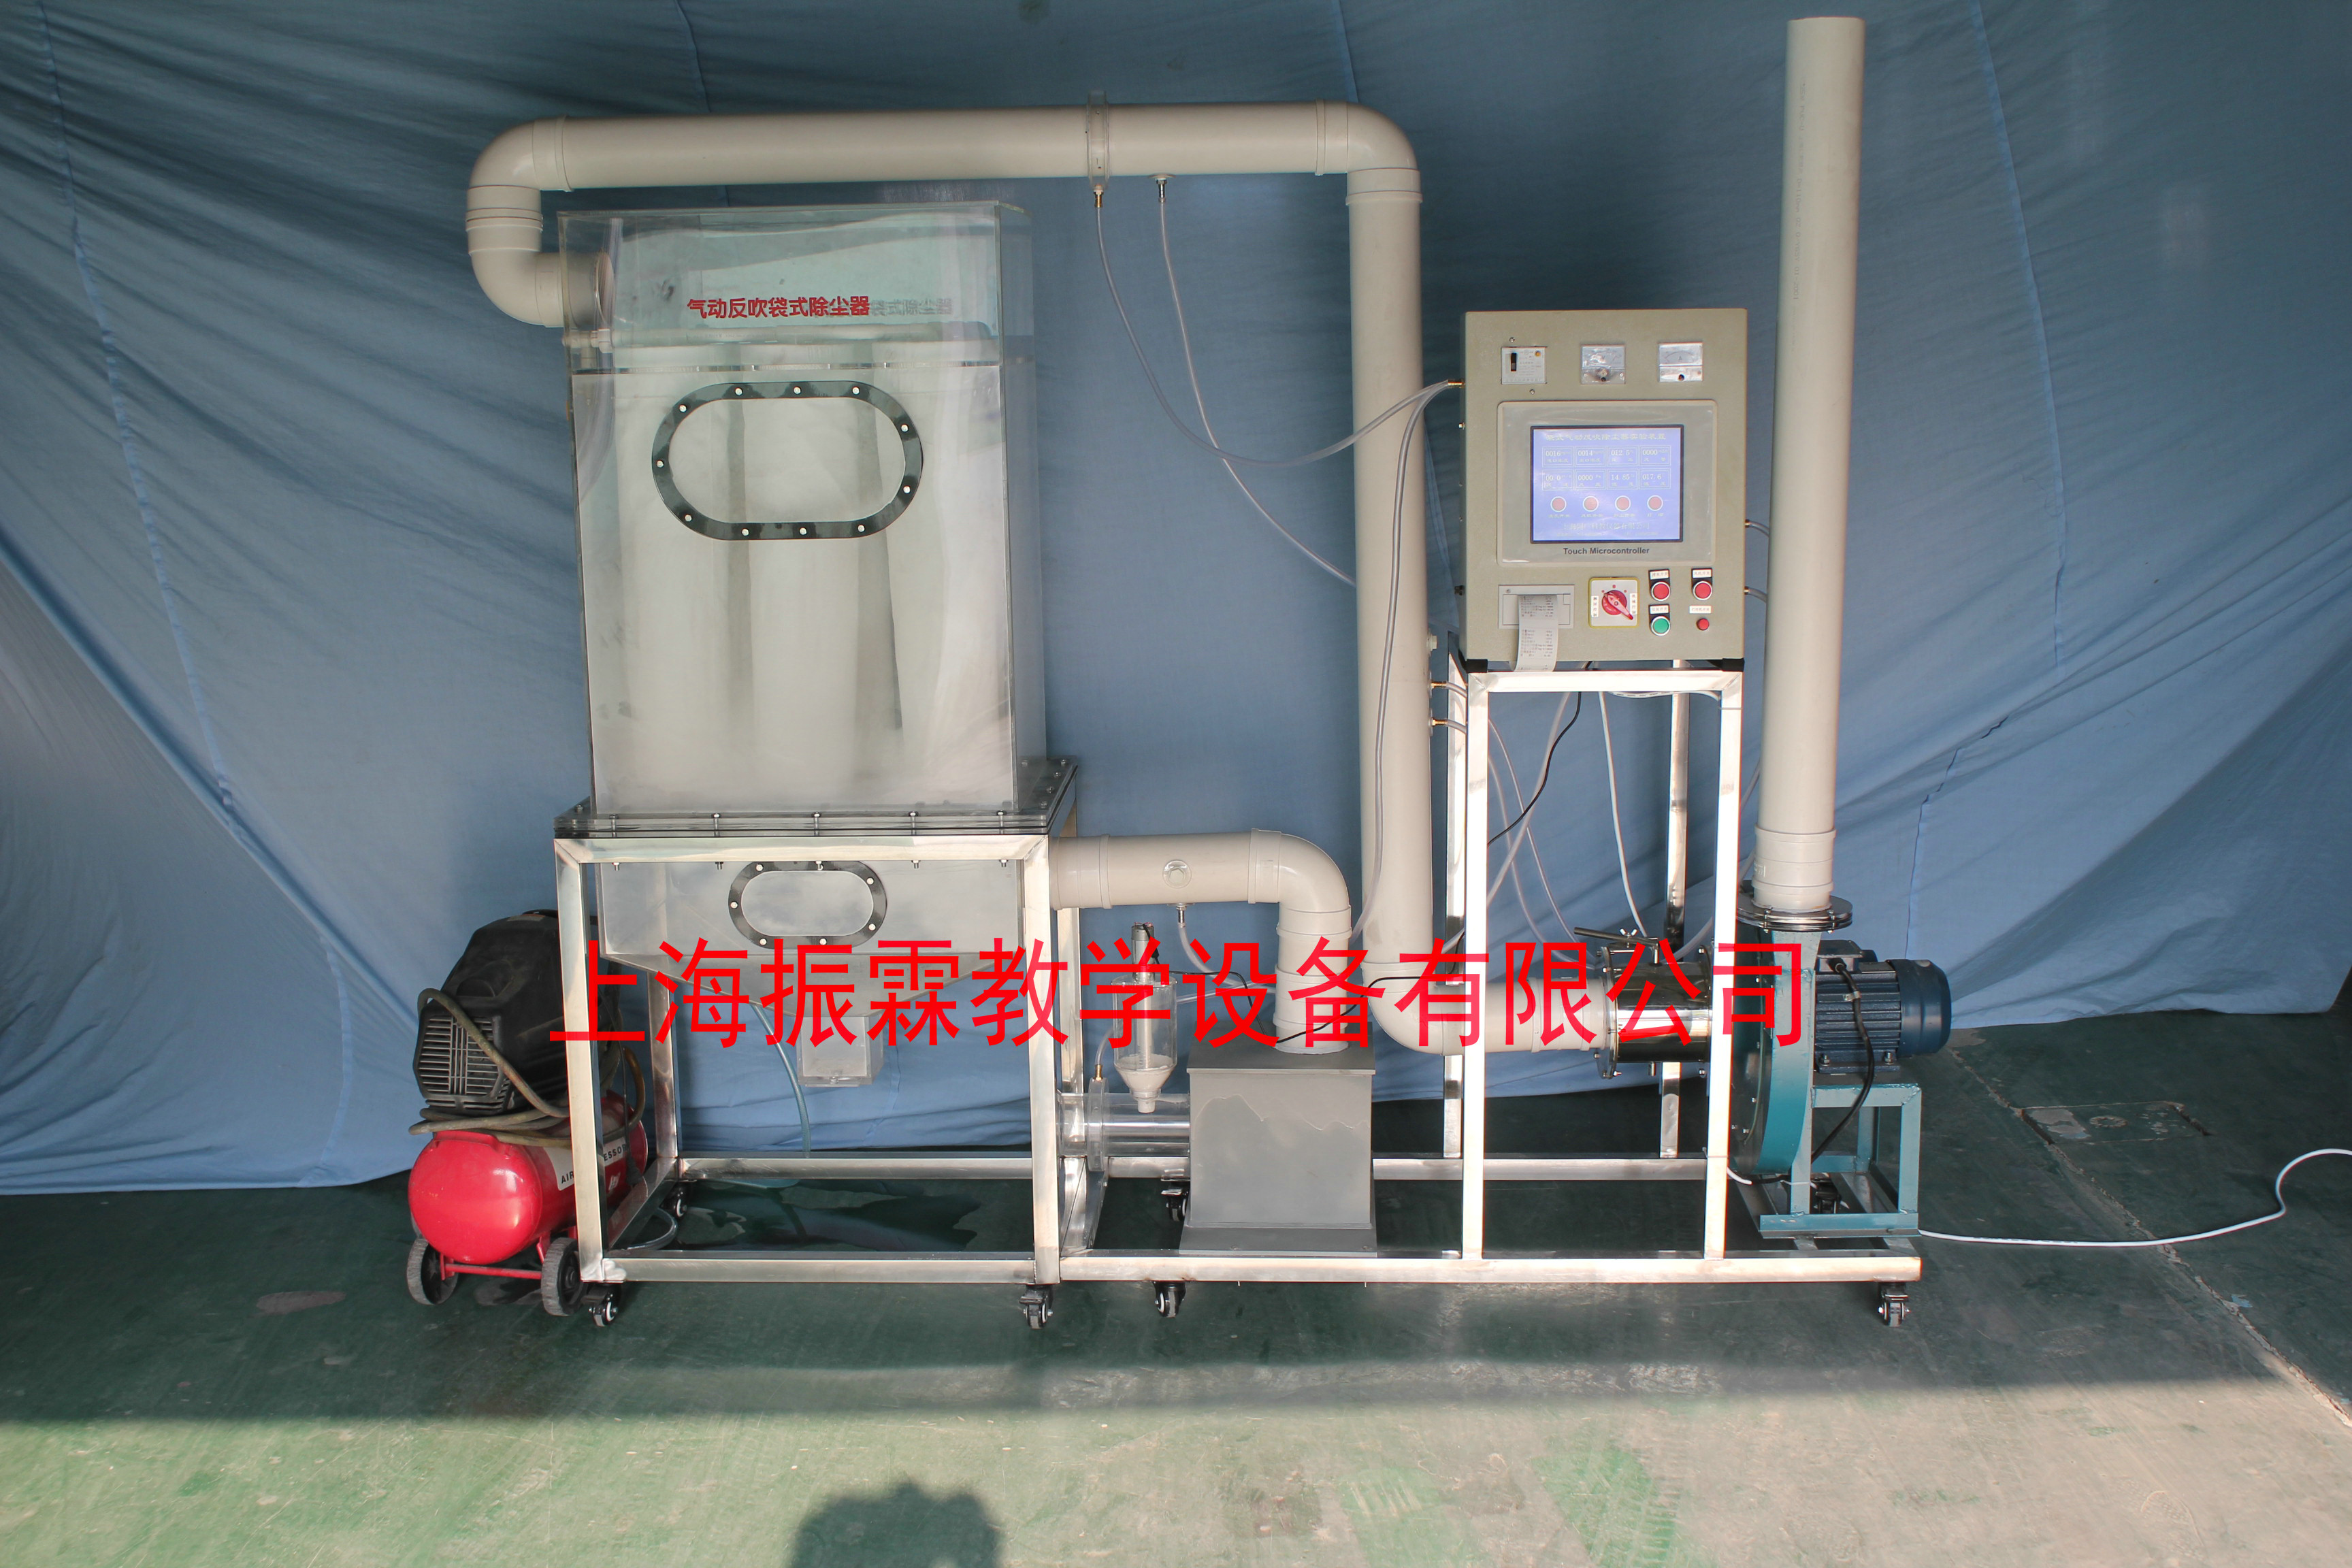 环境工程实训设备,气动反吹袋式除尘器,污水处理实验装置--上海振霖教学设备有限公司